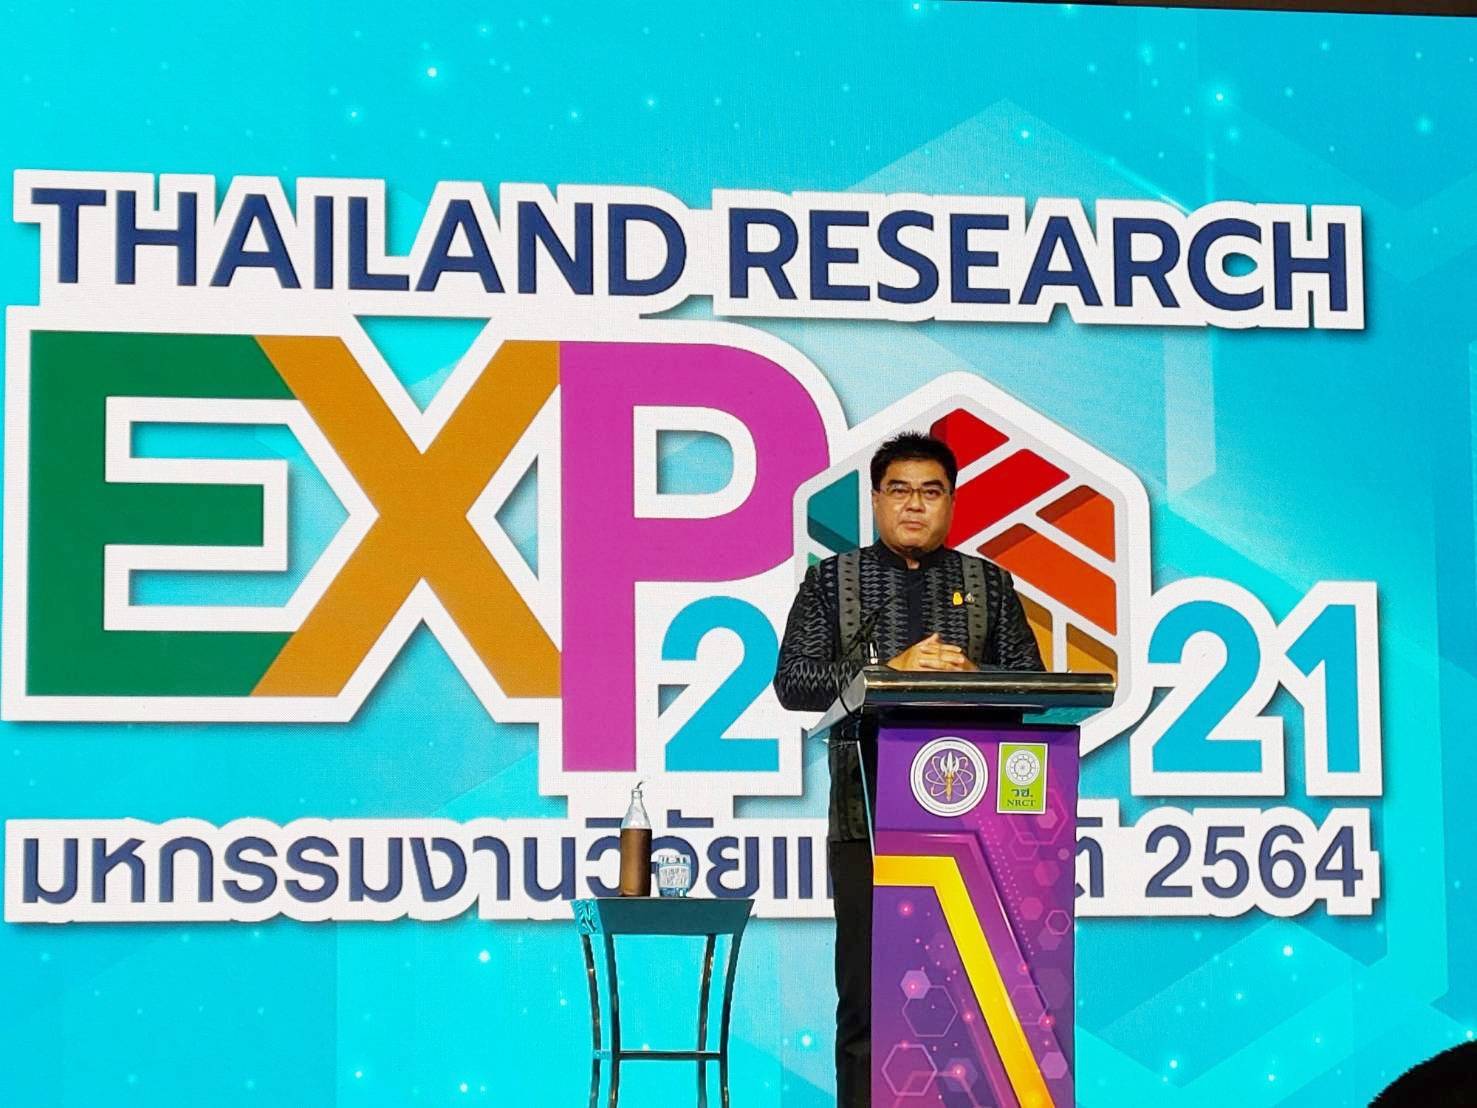 มหาวิทยาลัยสวนดุสิต โดยสถาบันวิจัยและพัฒนา ร่วมโชว์ผลงาน "งานวิจัยใช้ประโยชน์ได้" ในกิจกรรม "มหกรรมงานวิจัยแห่งชาติ 2564 (Thailand Research Expo 2021)"